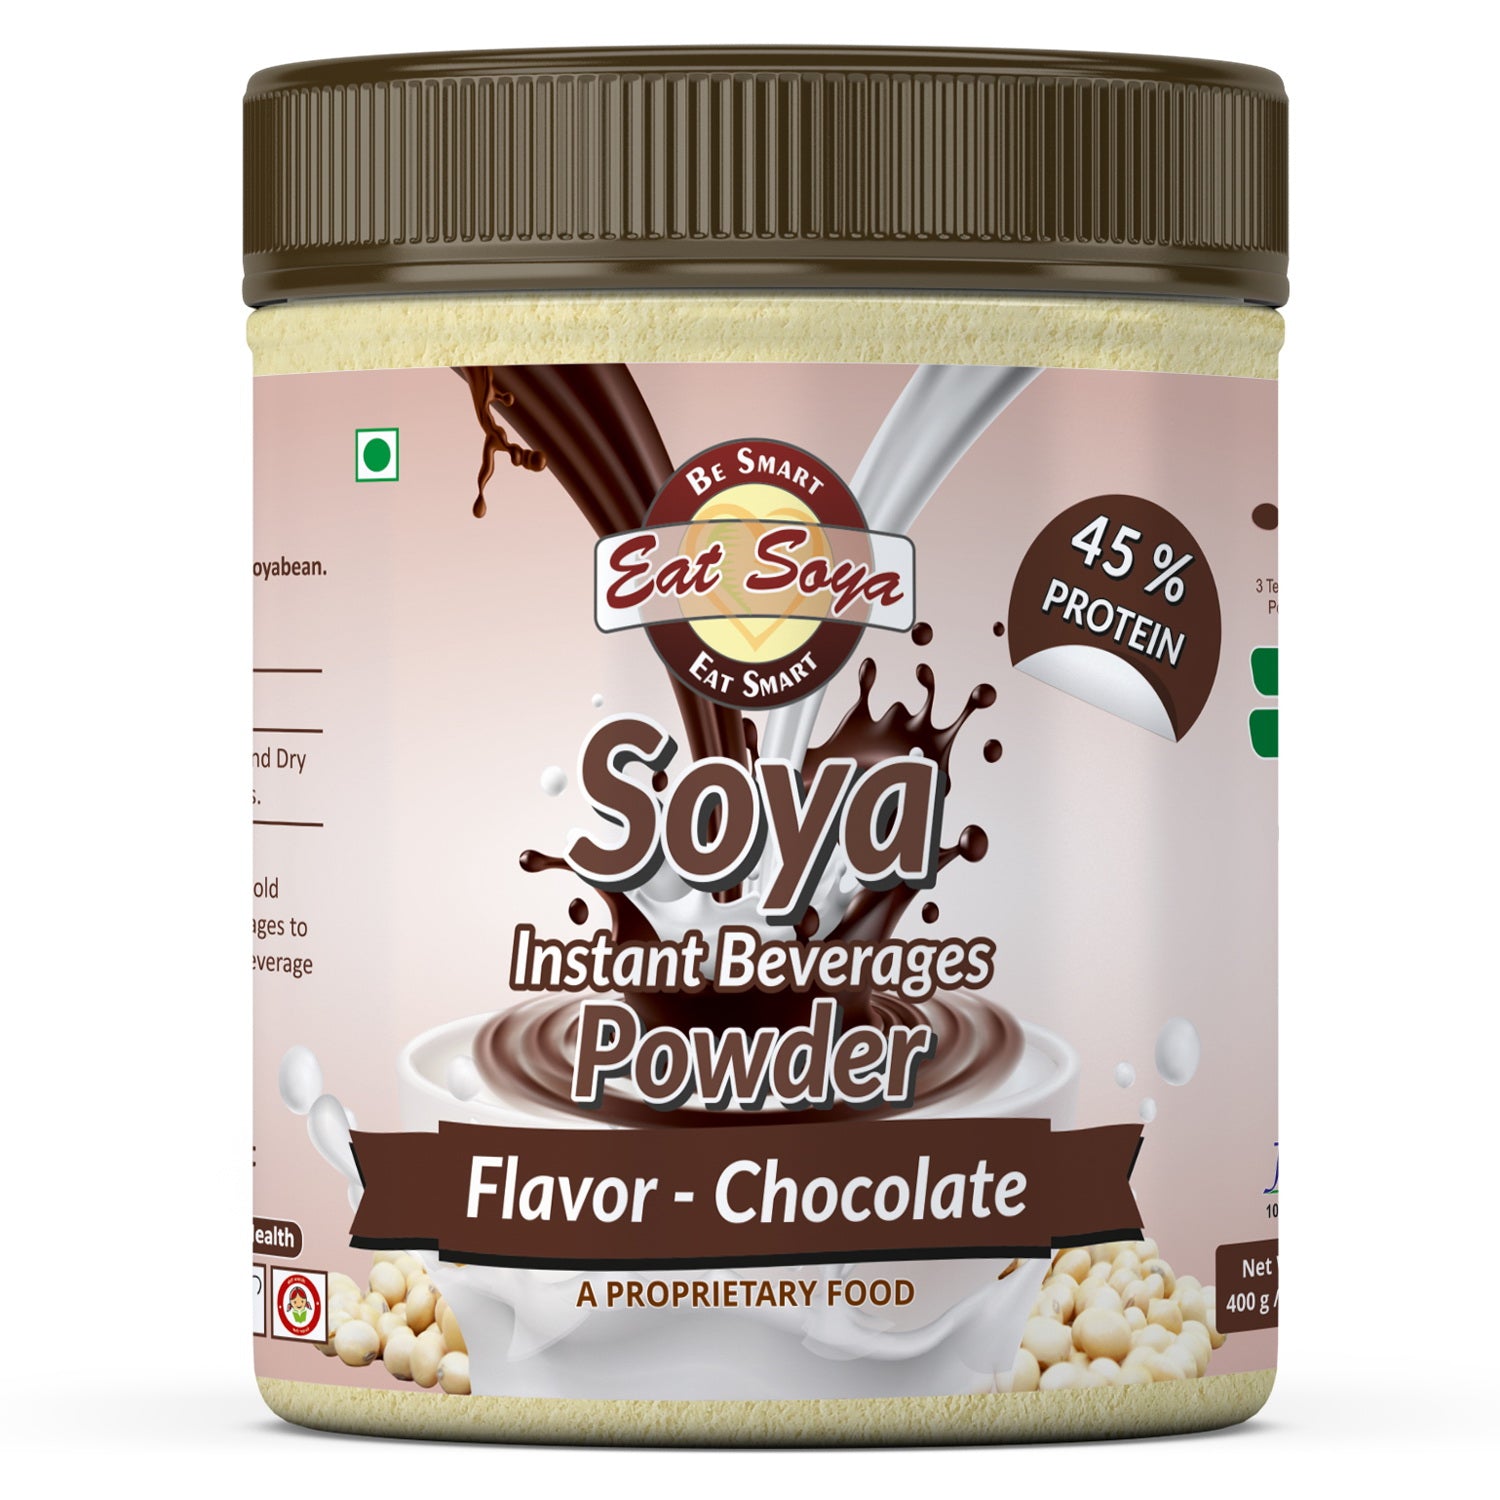 Soya Drink Powder Chocolate- Sugar Free 45% protein